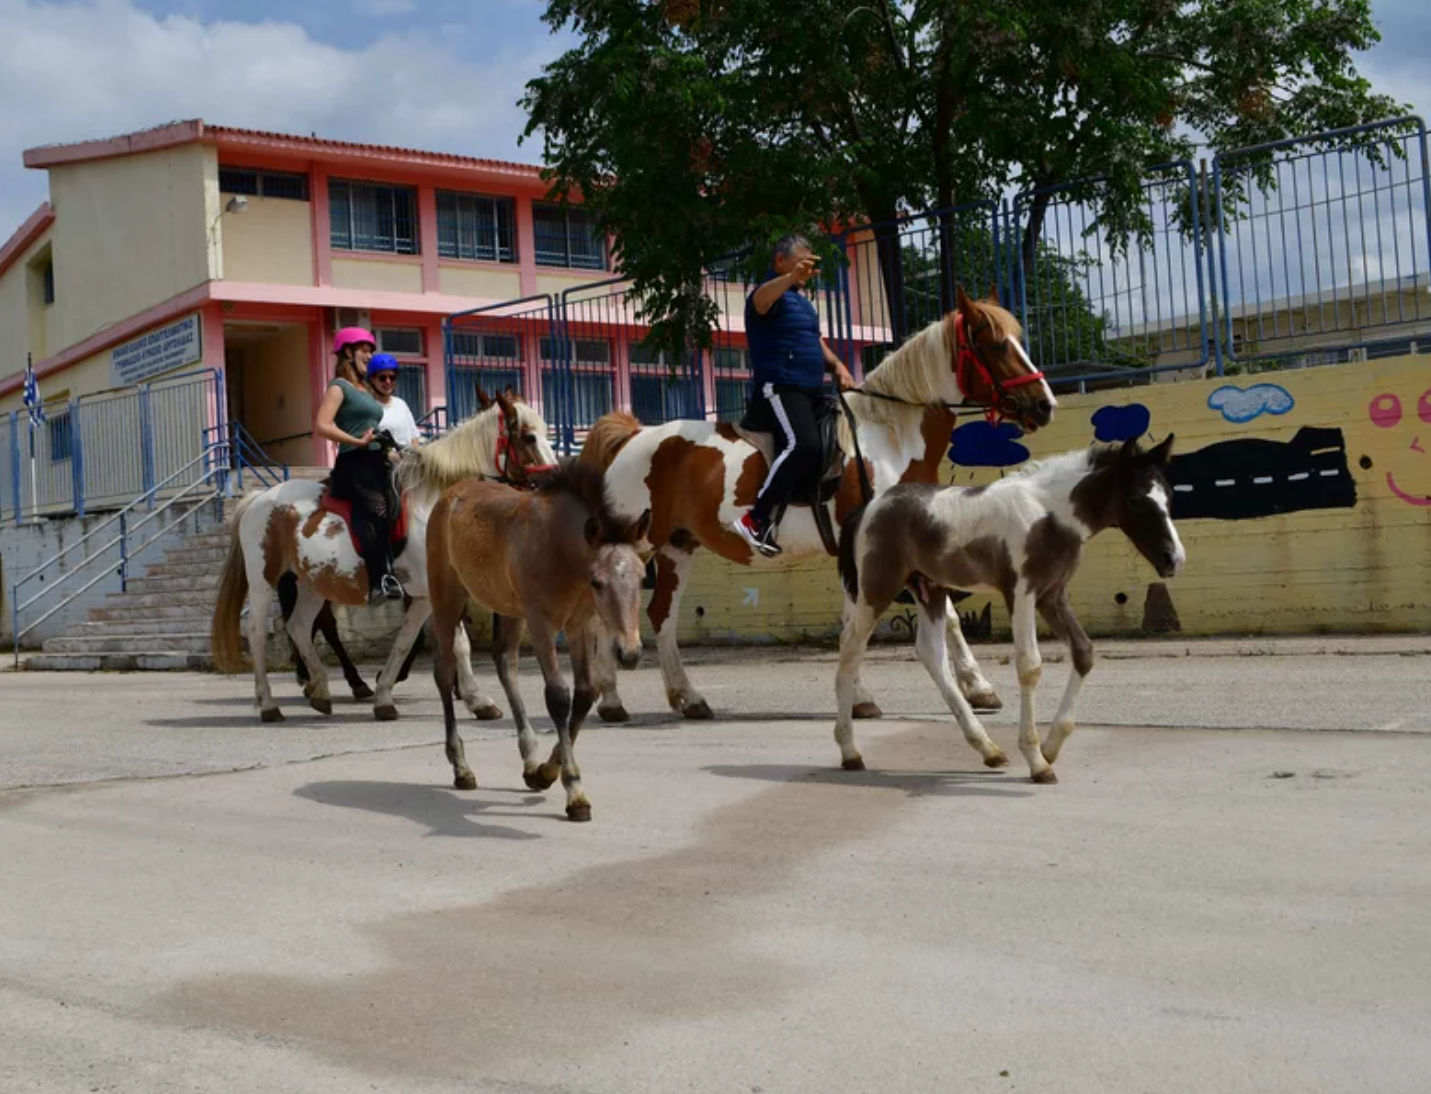 Στο Ναύπλιο ένας αγρότης αποφάσισε να ψηφίσει πηγαίνοντας μαζί με άλογα και γαϊδούρια στο εκλογικό κέντρο.